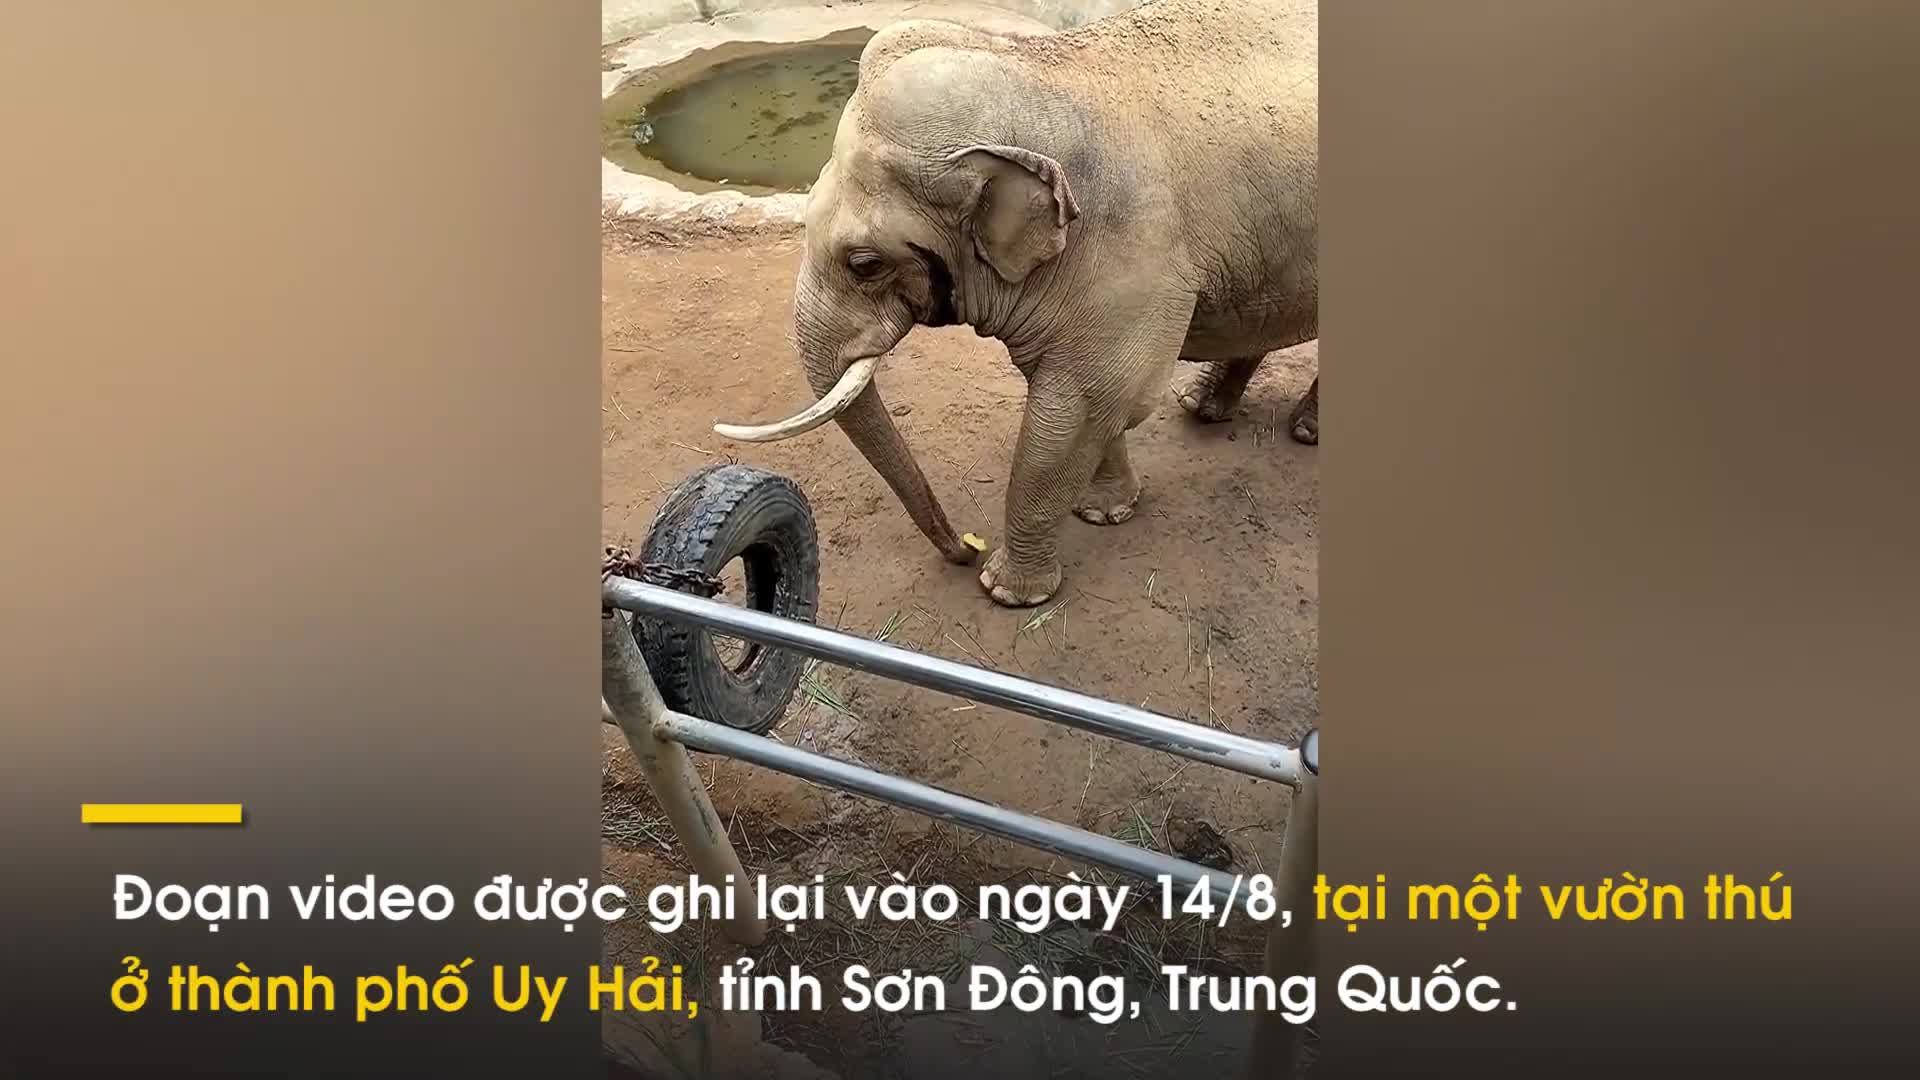 Video: Chú voi nhanh nhạy biết trả đồ cho du khách